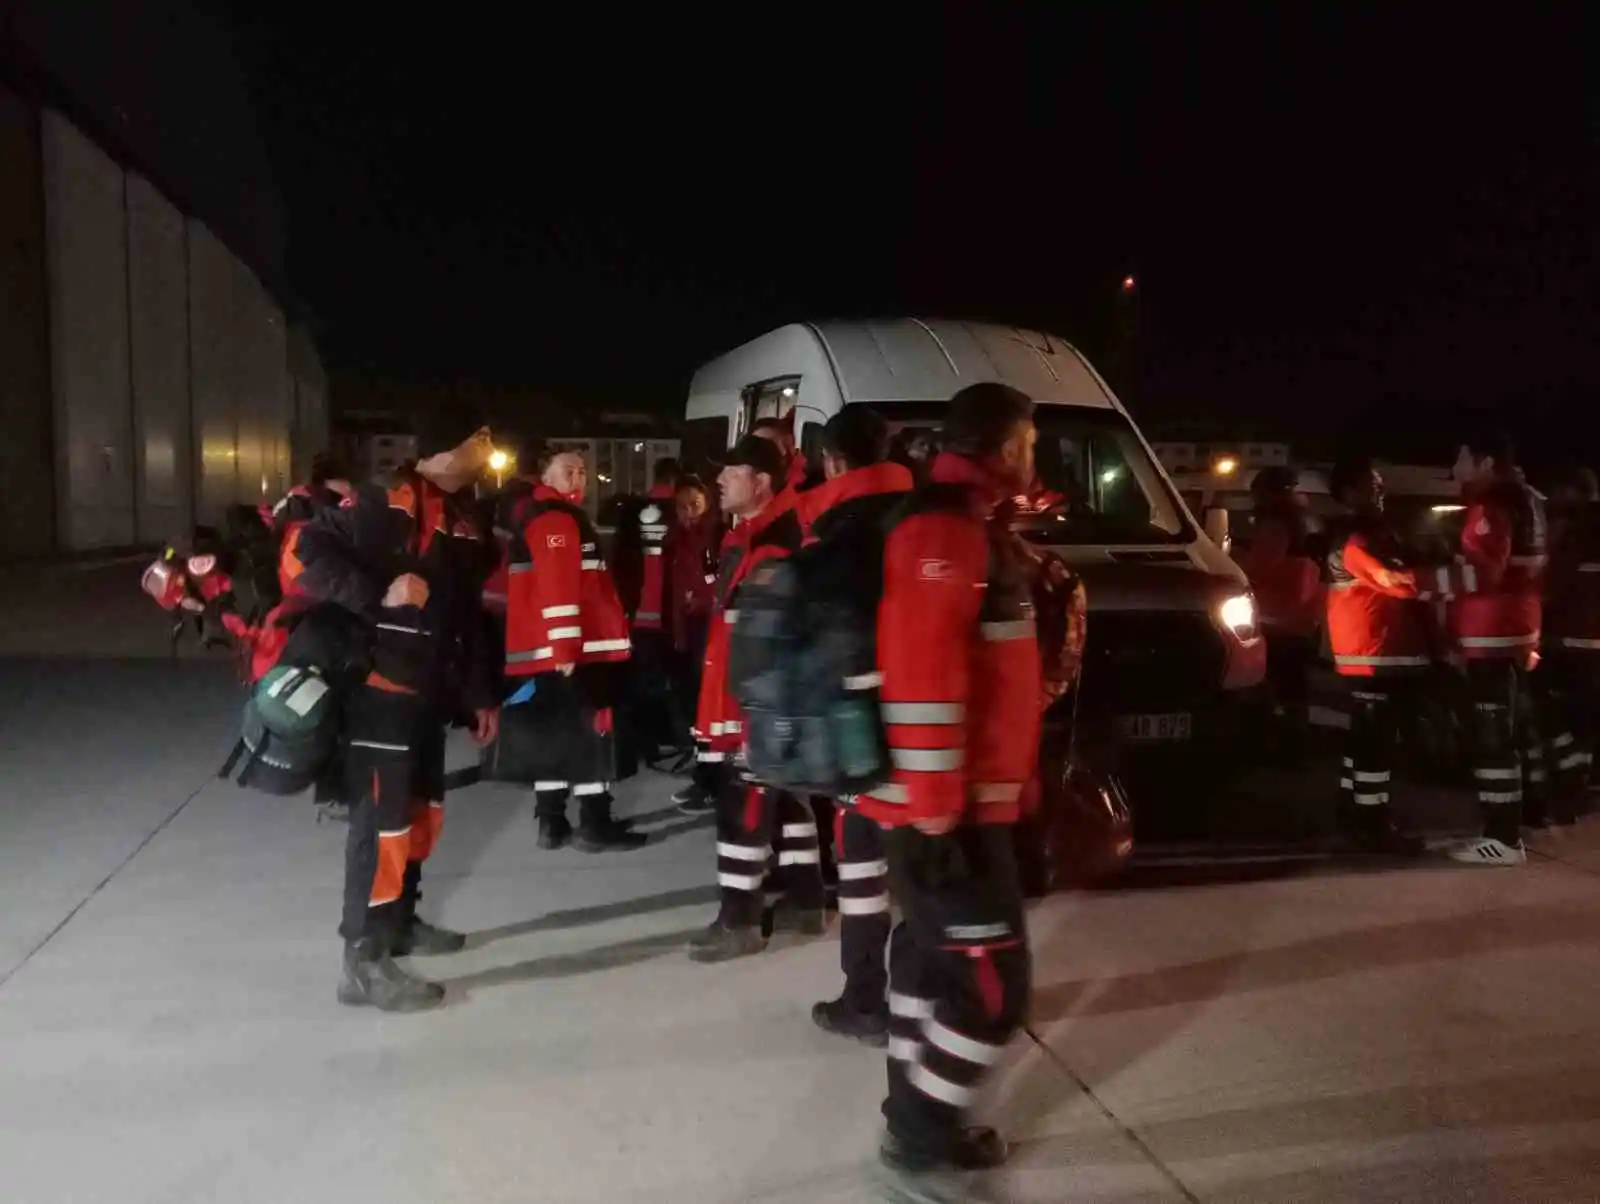 Hatay'daki arama kurtarma çalışmalarına katılan 32 itfaiyeci İstanbul'a döndü
